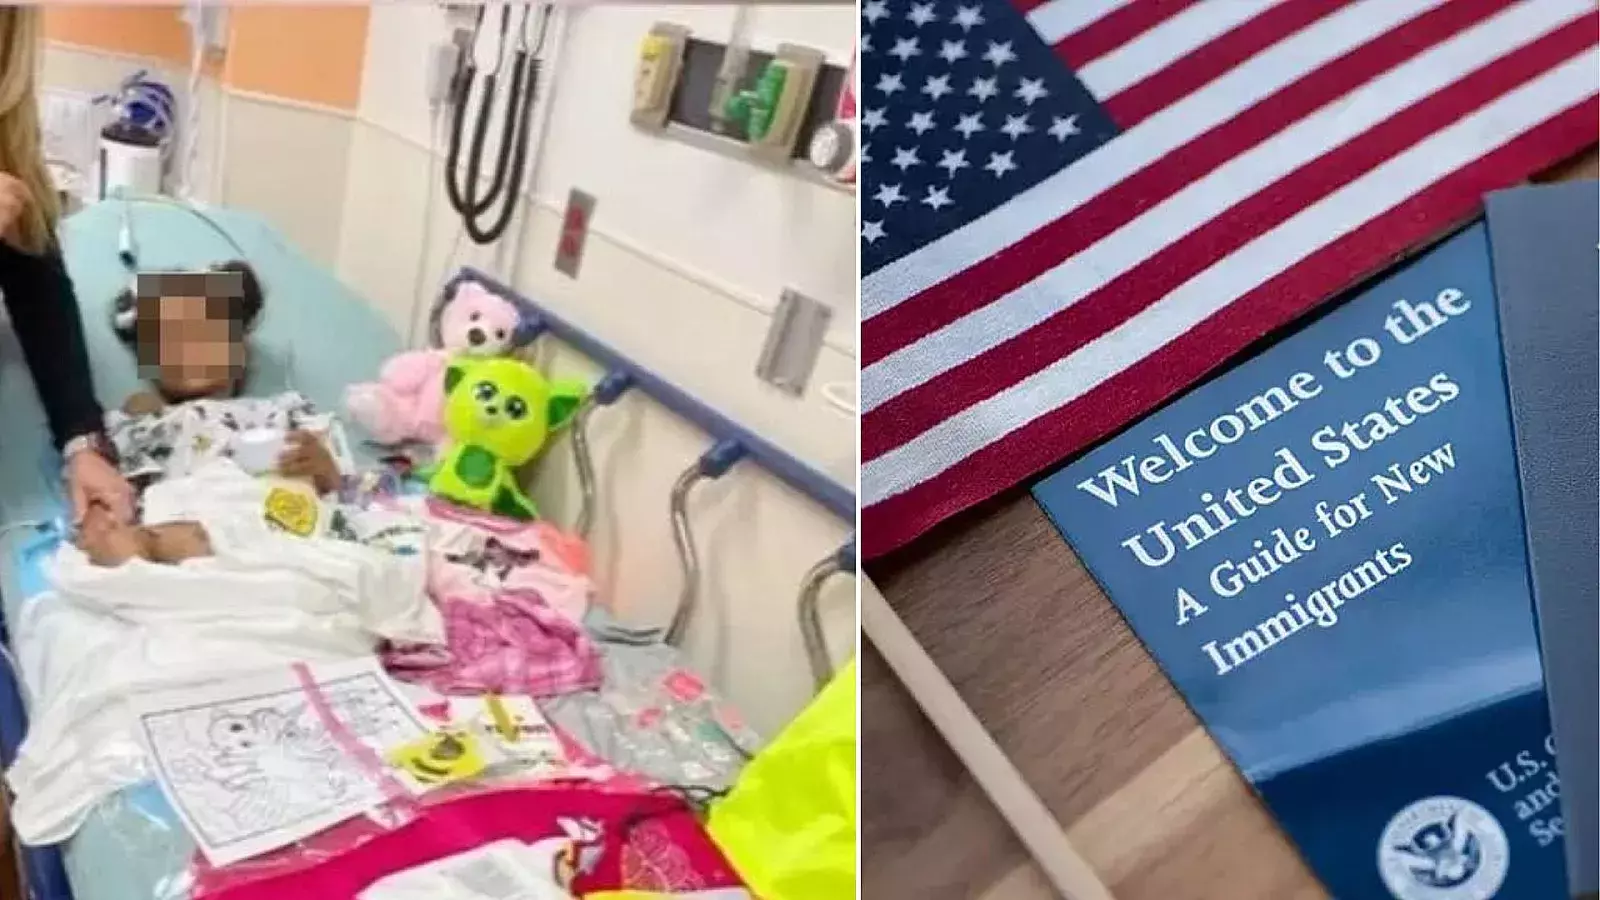 La niña retenida por Inmigración fue liberada y se encuentra en hospital.